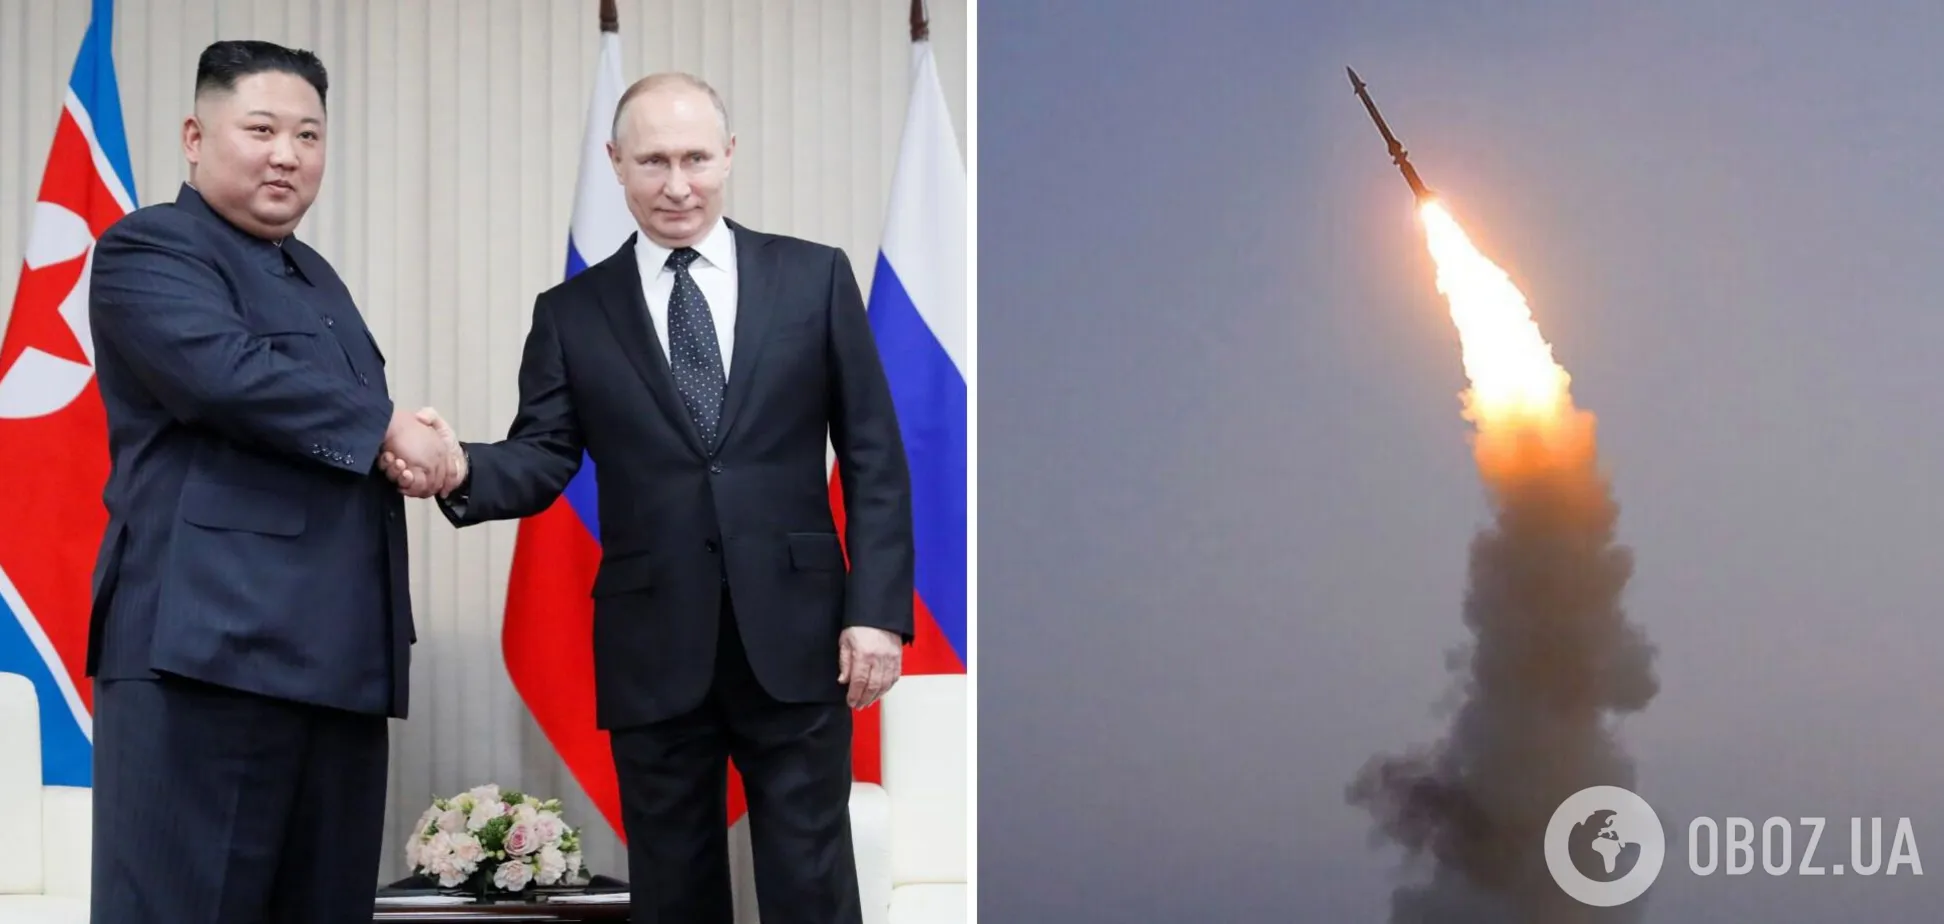 Ракети від Ірану та КНДР: Буданов оцінив постачання зброї Путіну. Відео